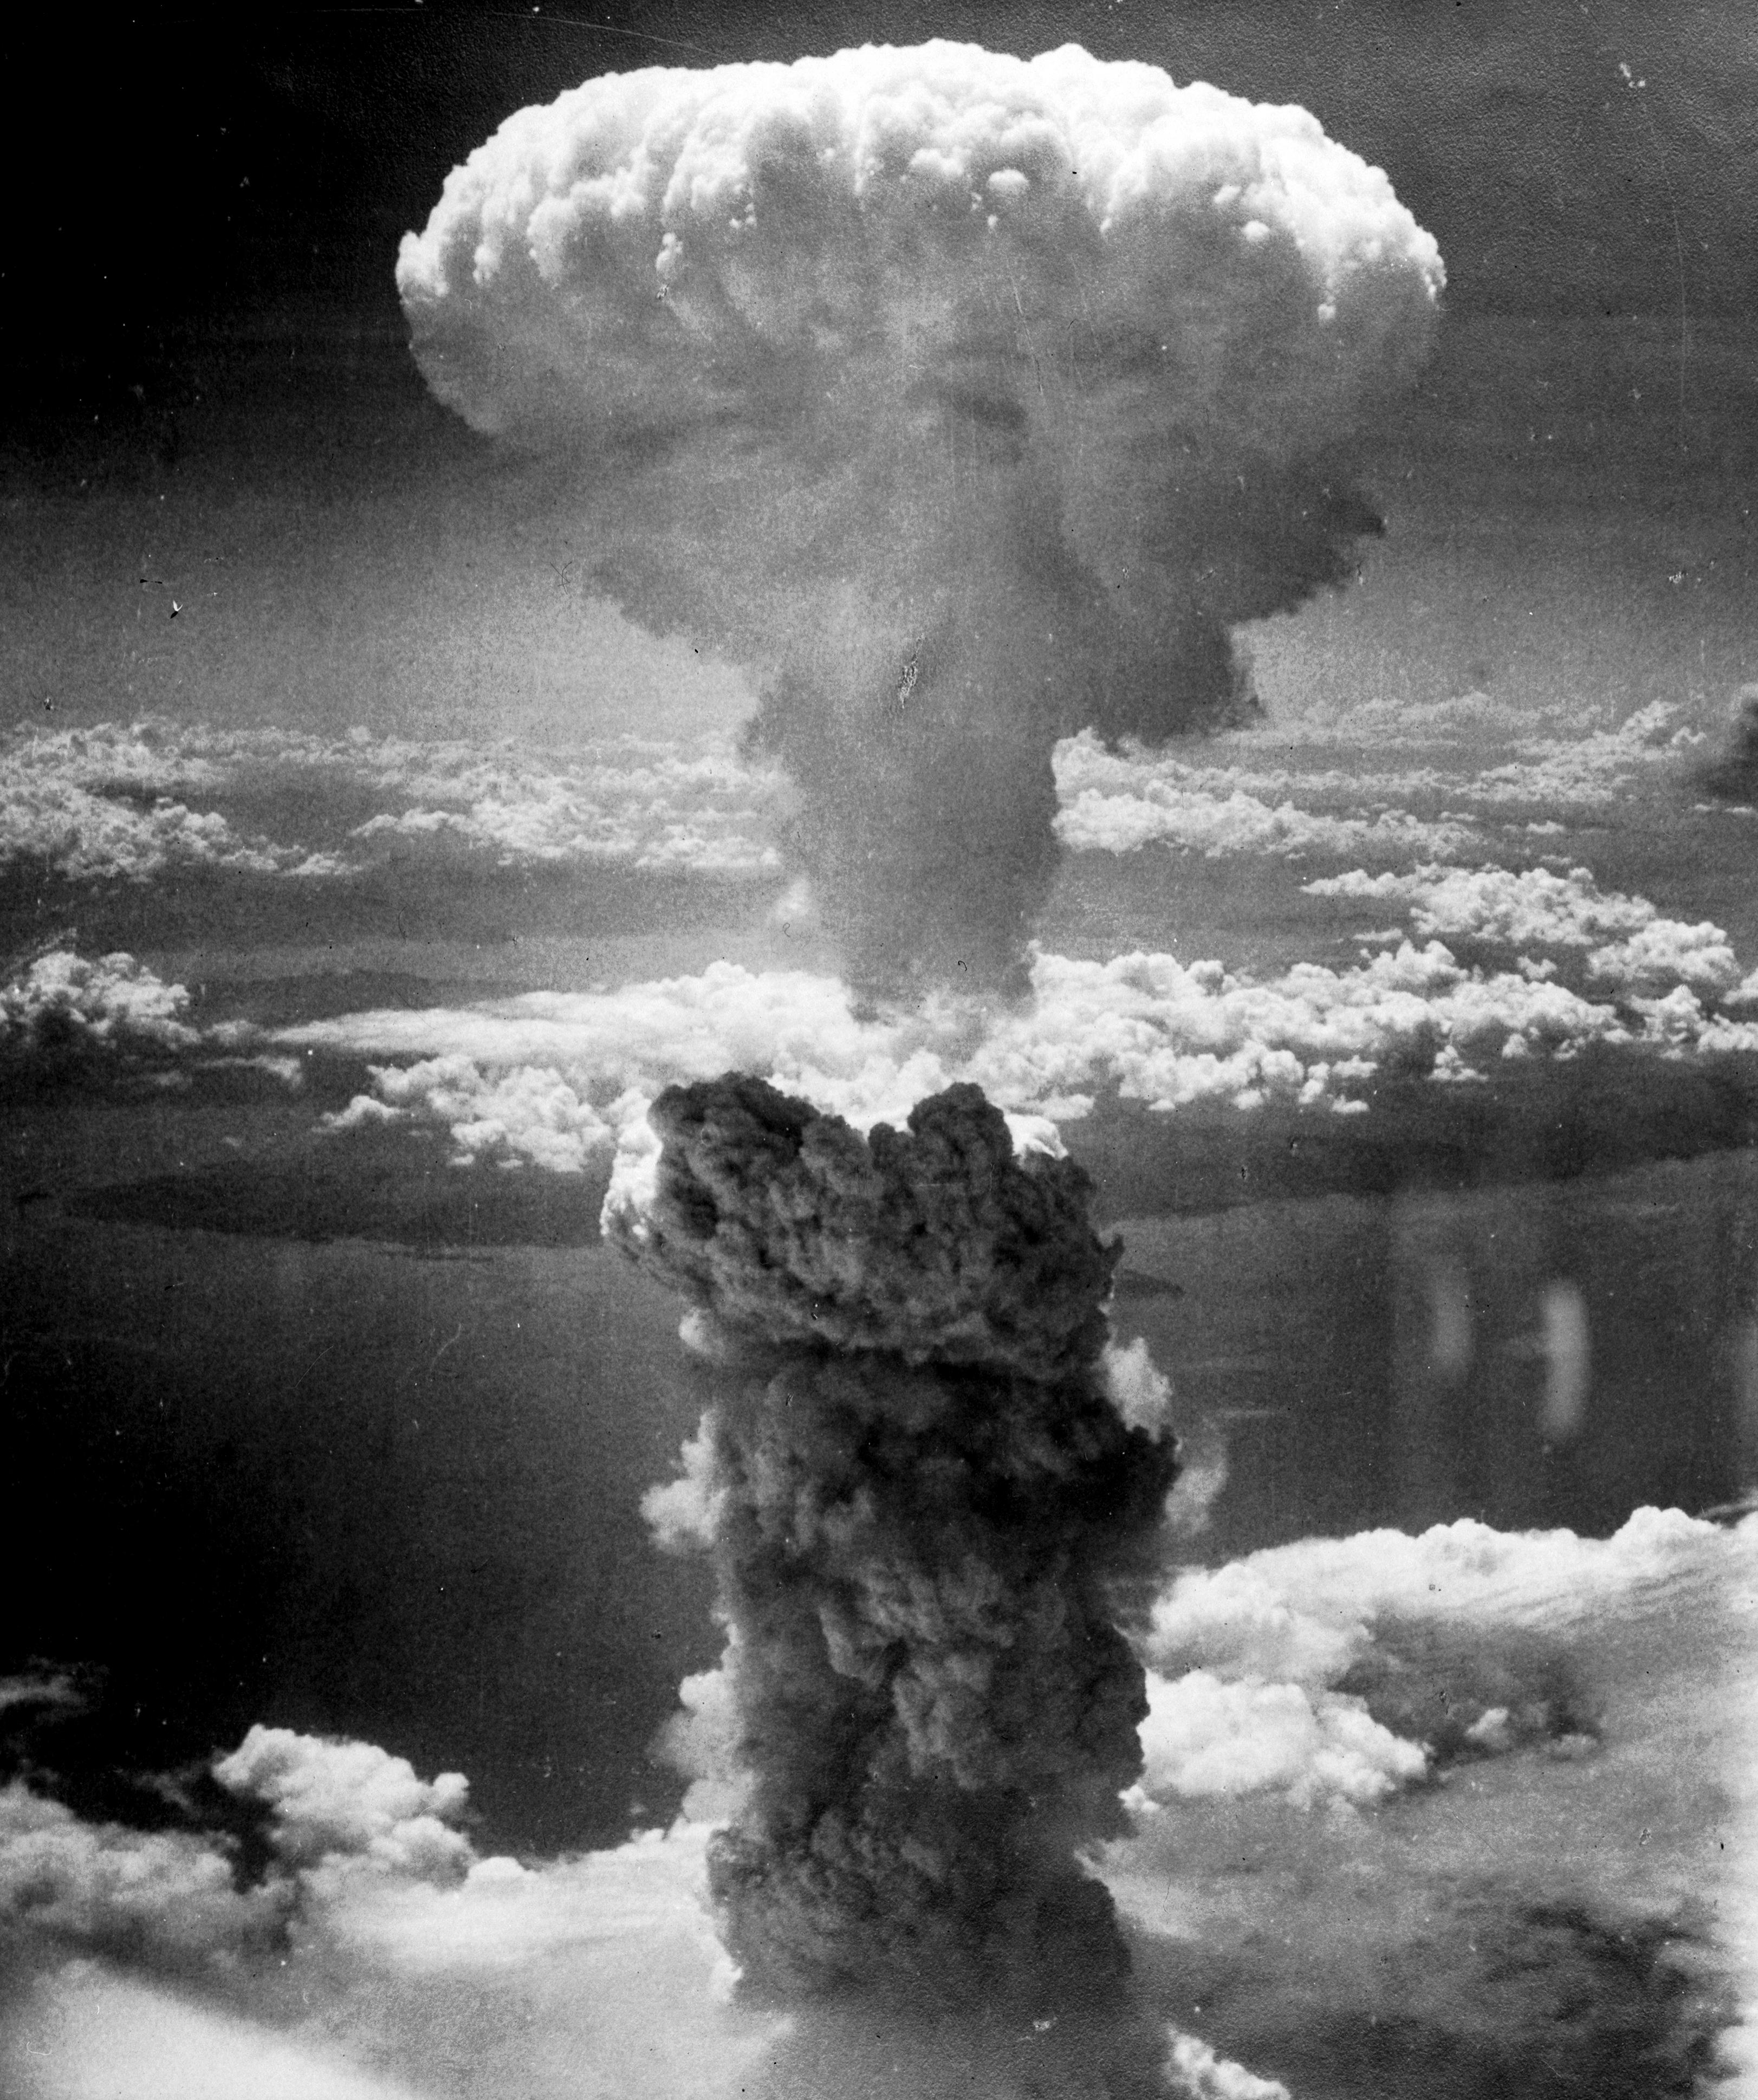 Cele mai importante evenimente ale lunii august. Aviația americană a folosit bomba atomică la Hiroshima și Nagasaki ceea ce a provocat moartea imediată a peste 100.000 de oameni